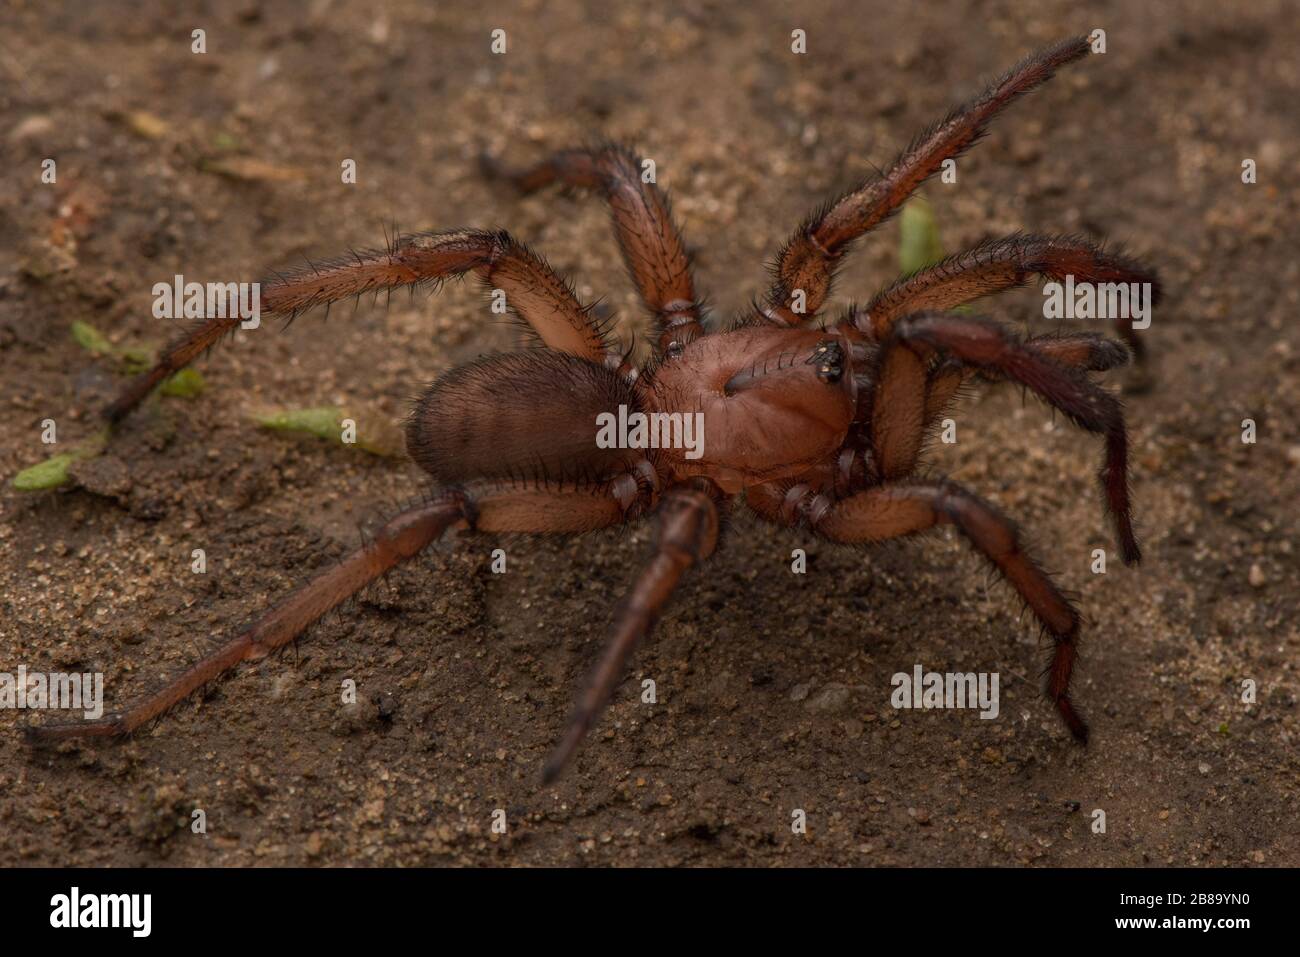 Une araignée d'espèces Aptostichus sur le rampement, mieux connue sous le nom d'araignée de porte de piège de wafer, un type de mygalomorphe endémique à la Californie. Banque D'Images